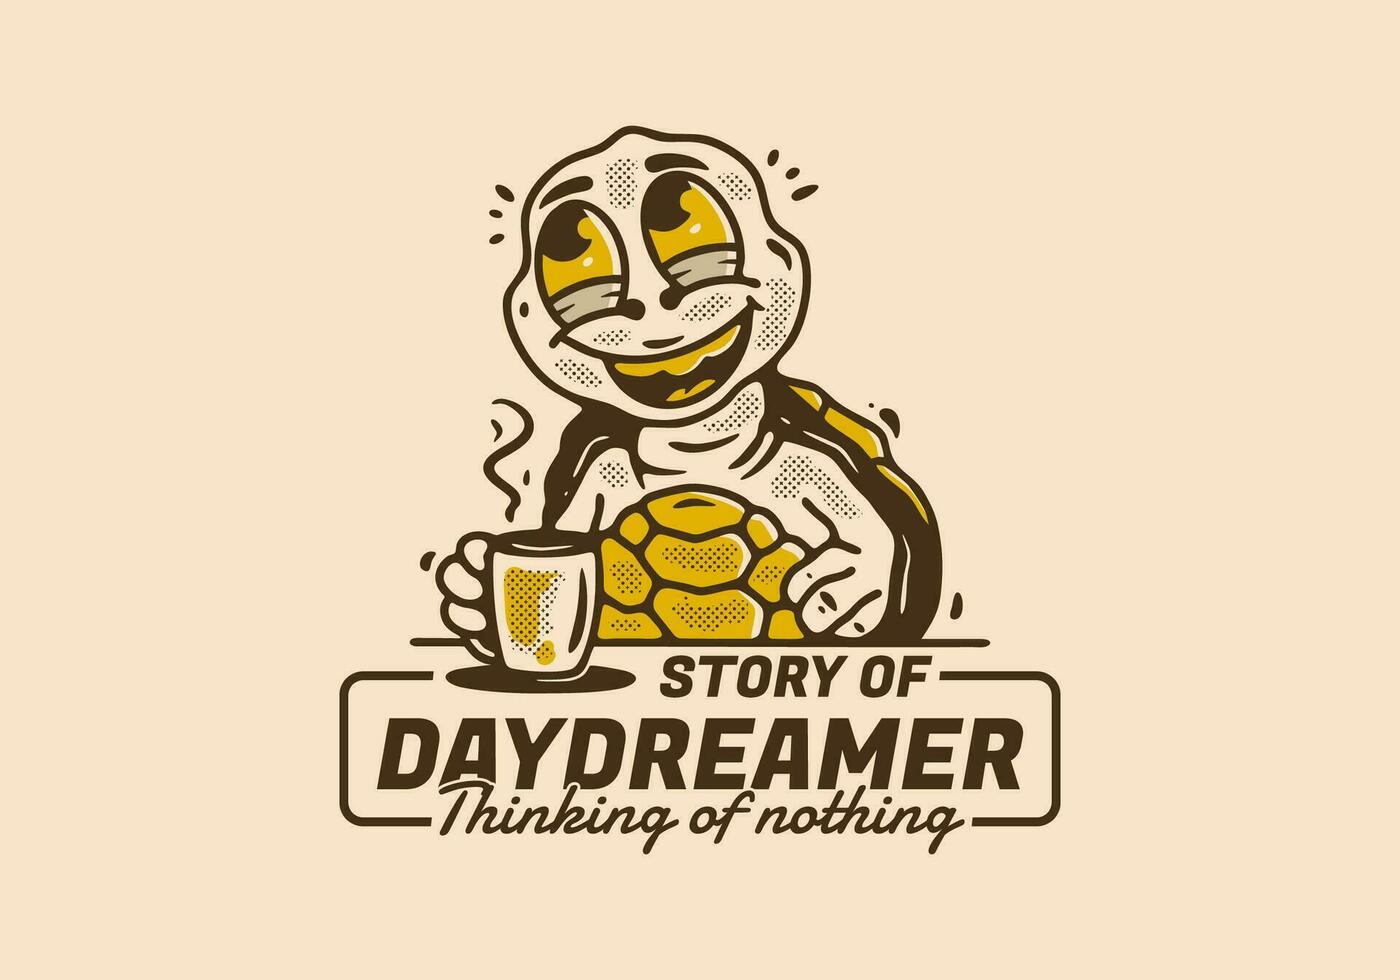 sonhador pensando do nada, mascote personagem do tartaruga beber uma café enquanto sonhando acordado vetor